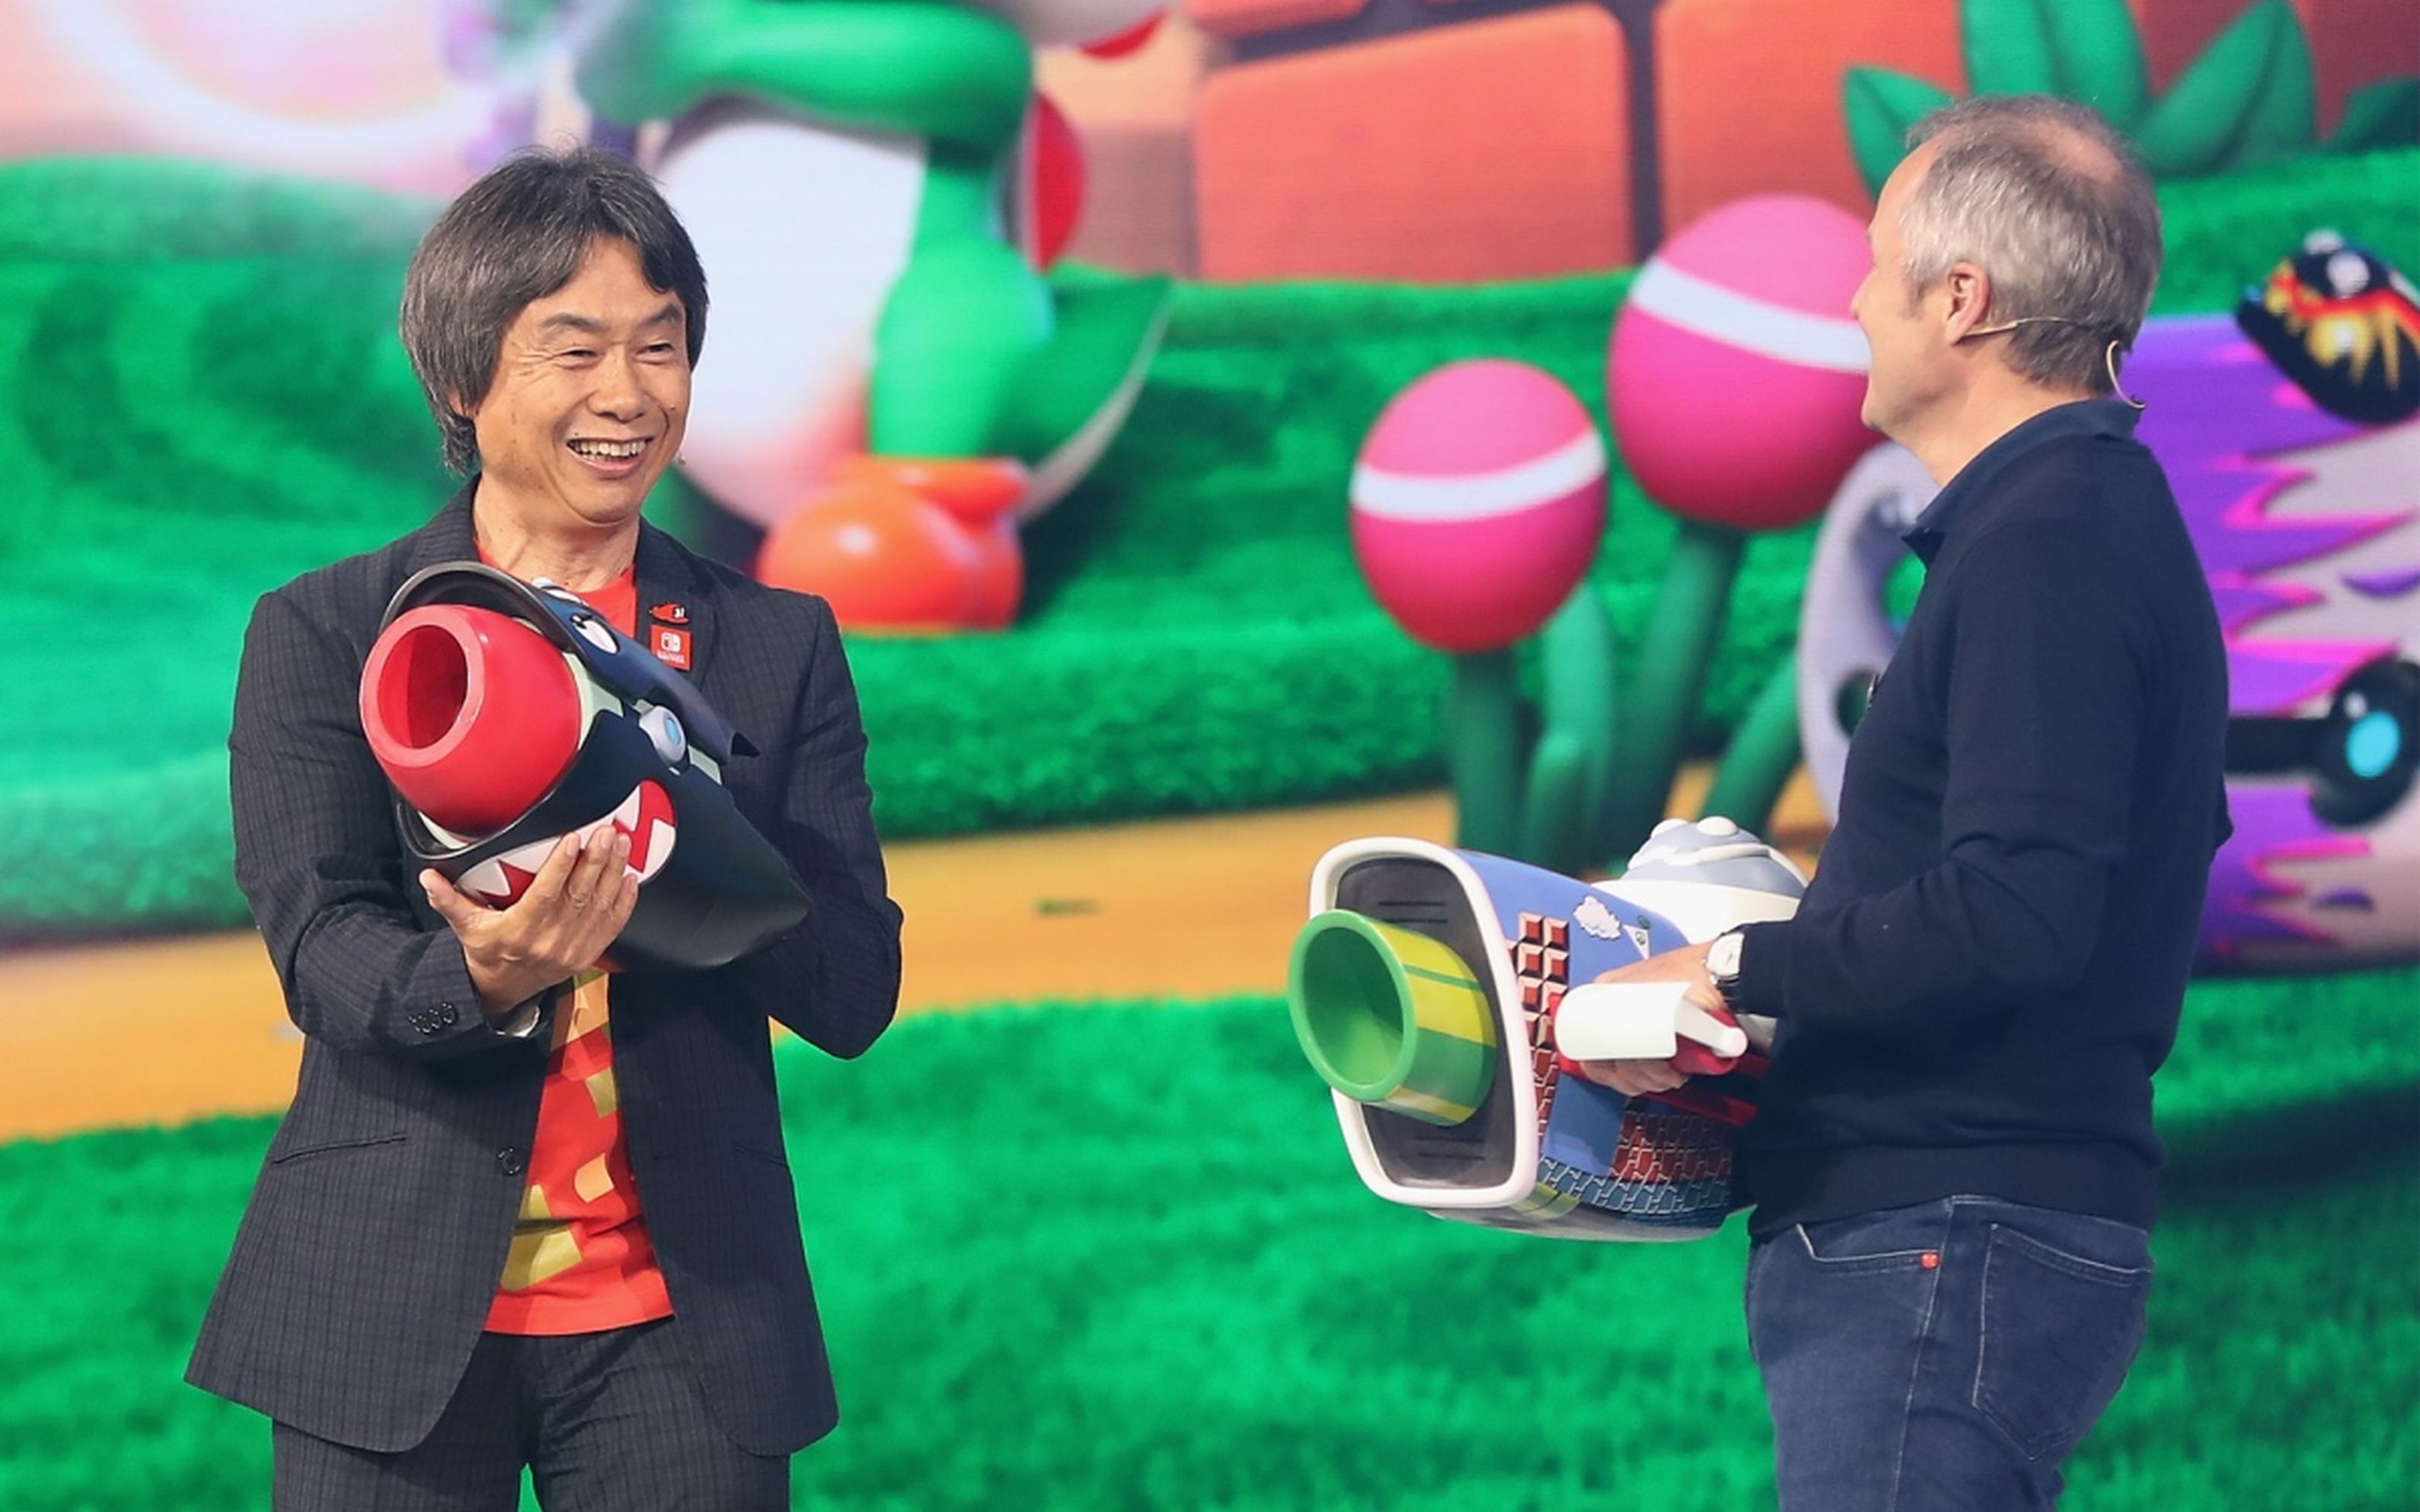 Shigeru Miyamoto E3